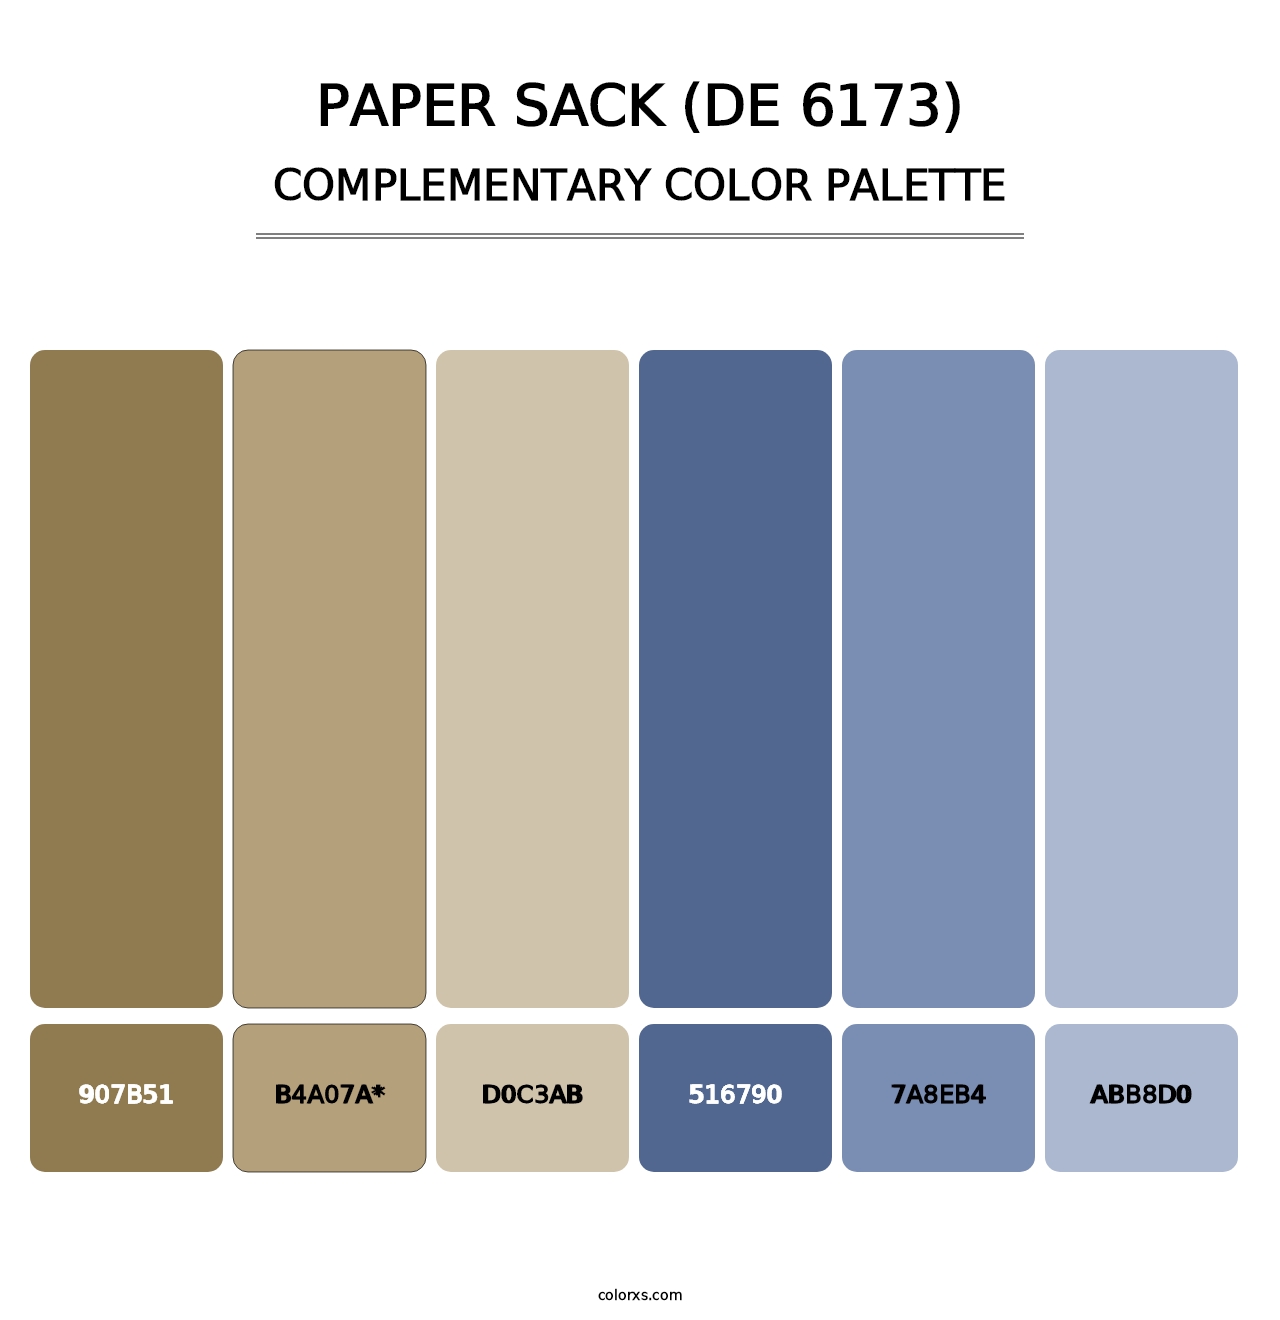 Paper Sack (DE 6173) - Complementary Color Palette